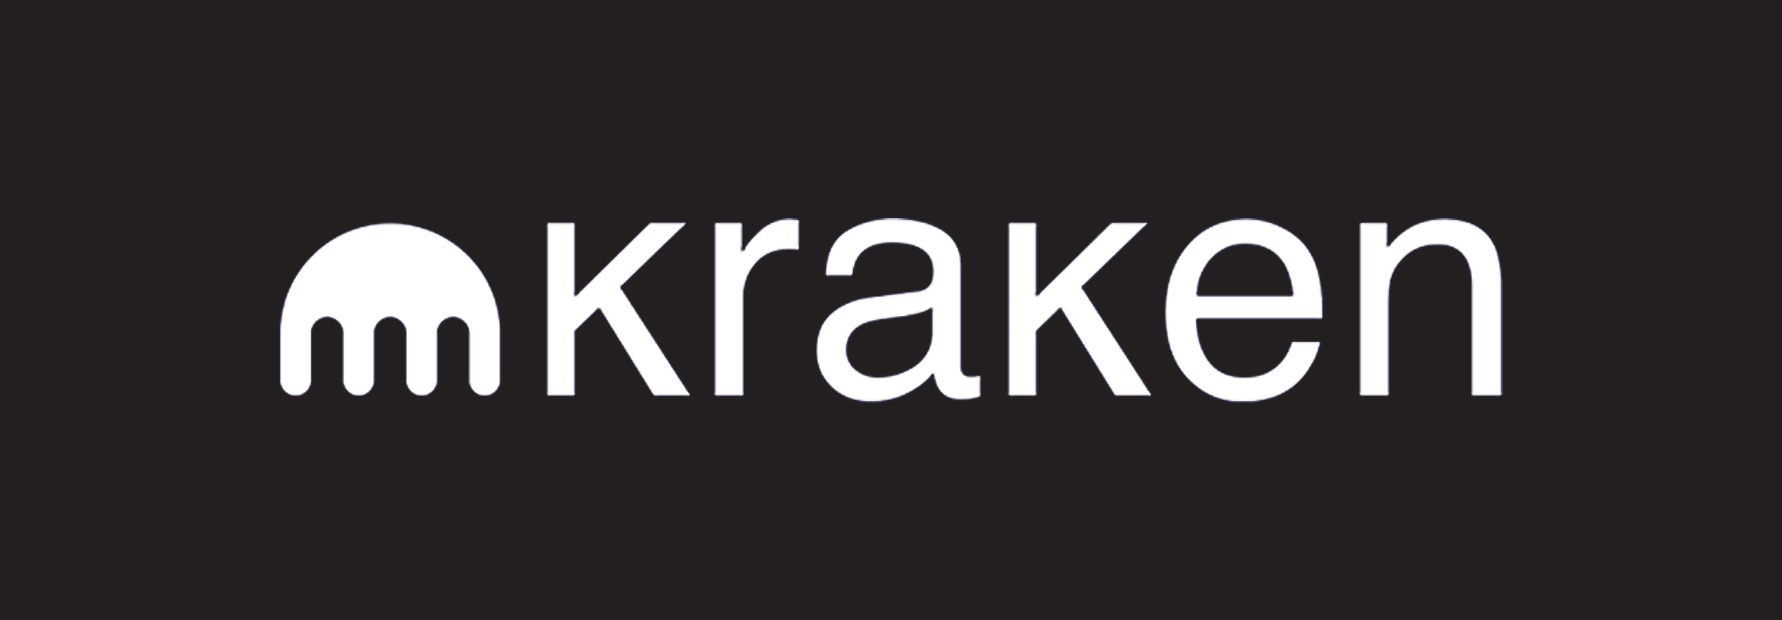 kraken-logo.jpg